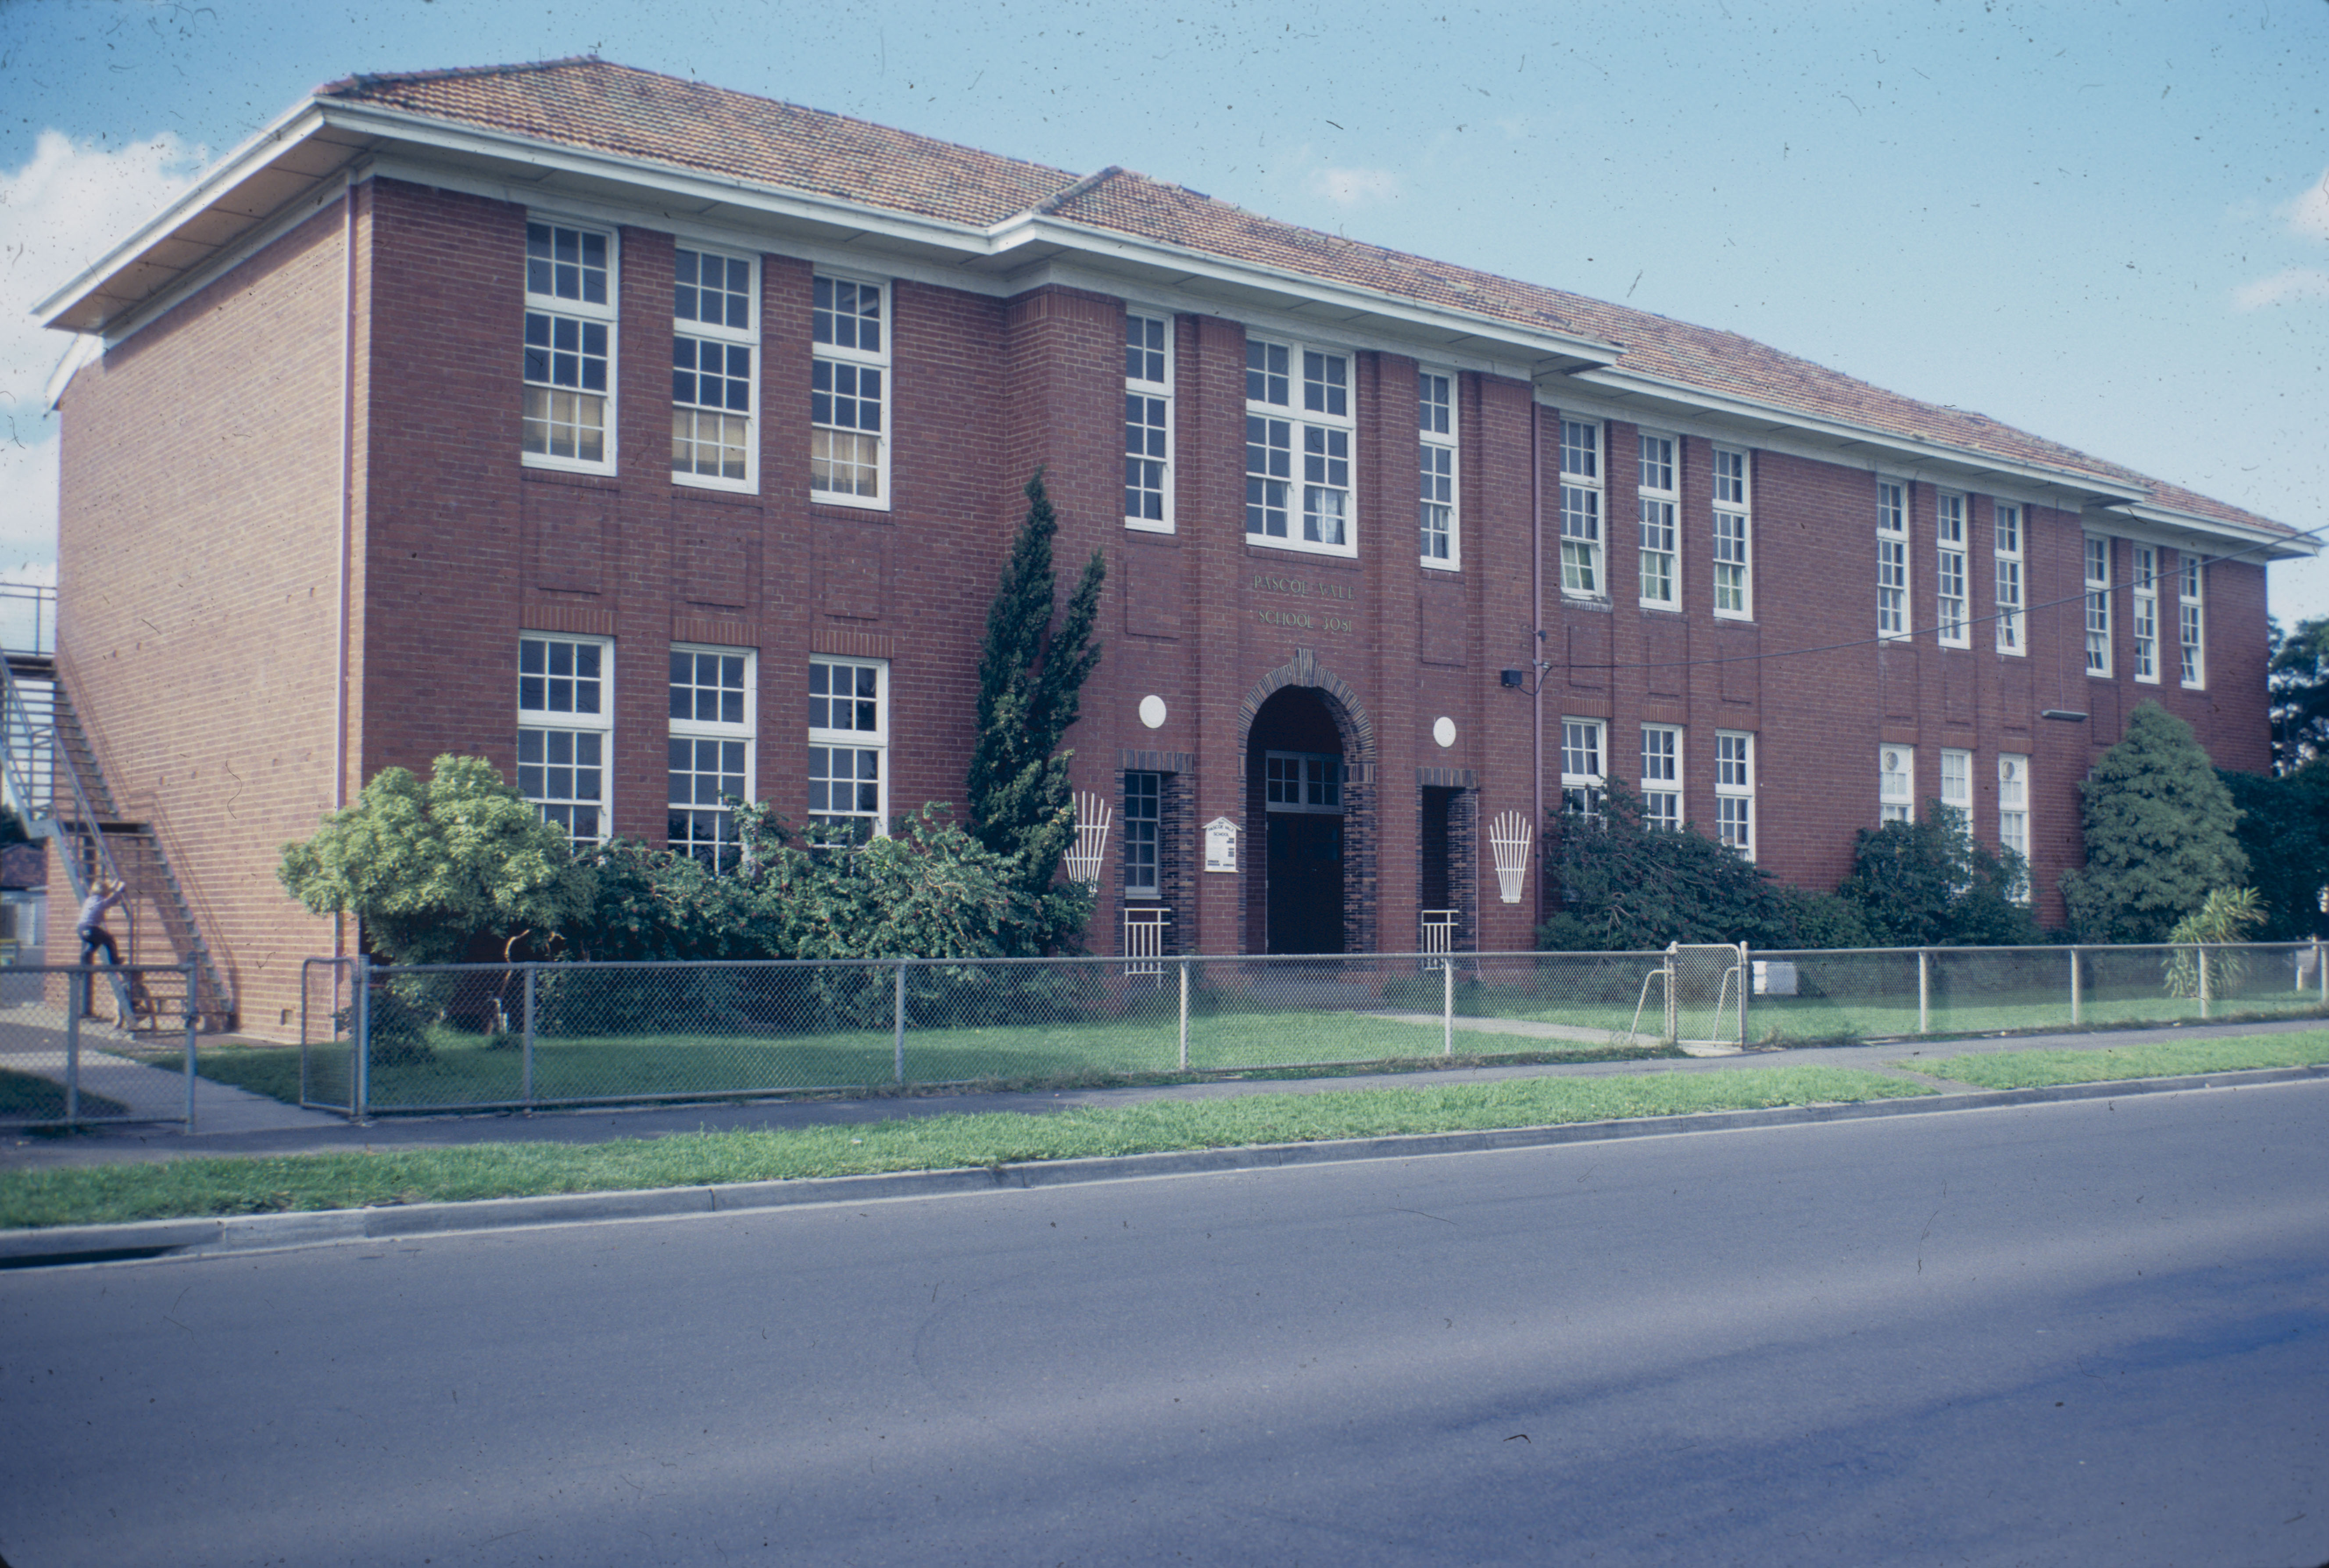 Pascoe Vale Primary School, 1929 Building